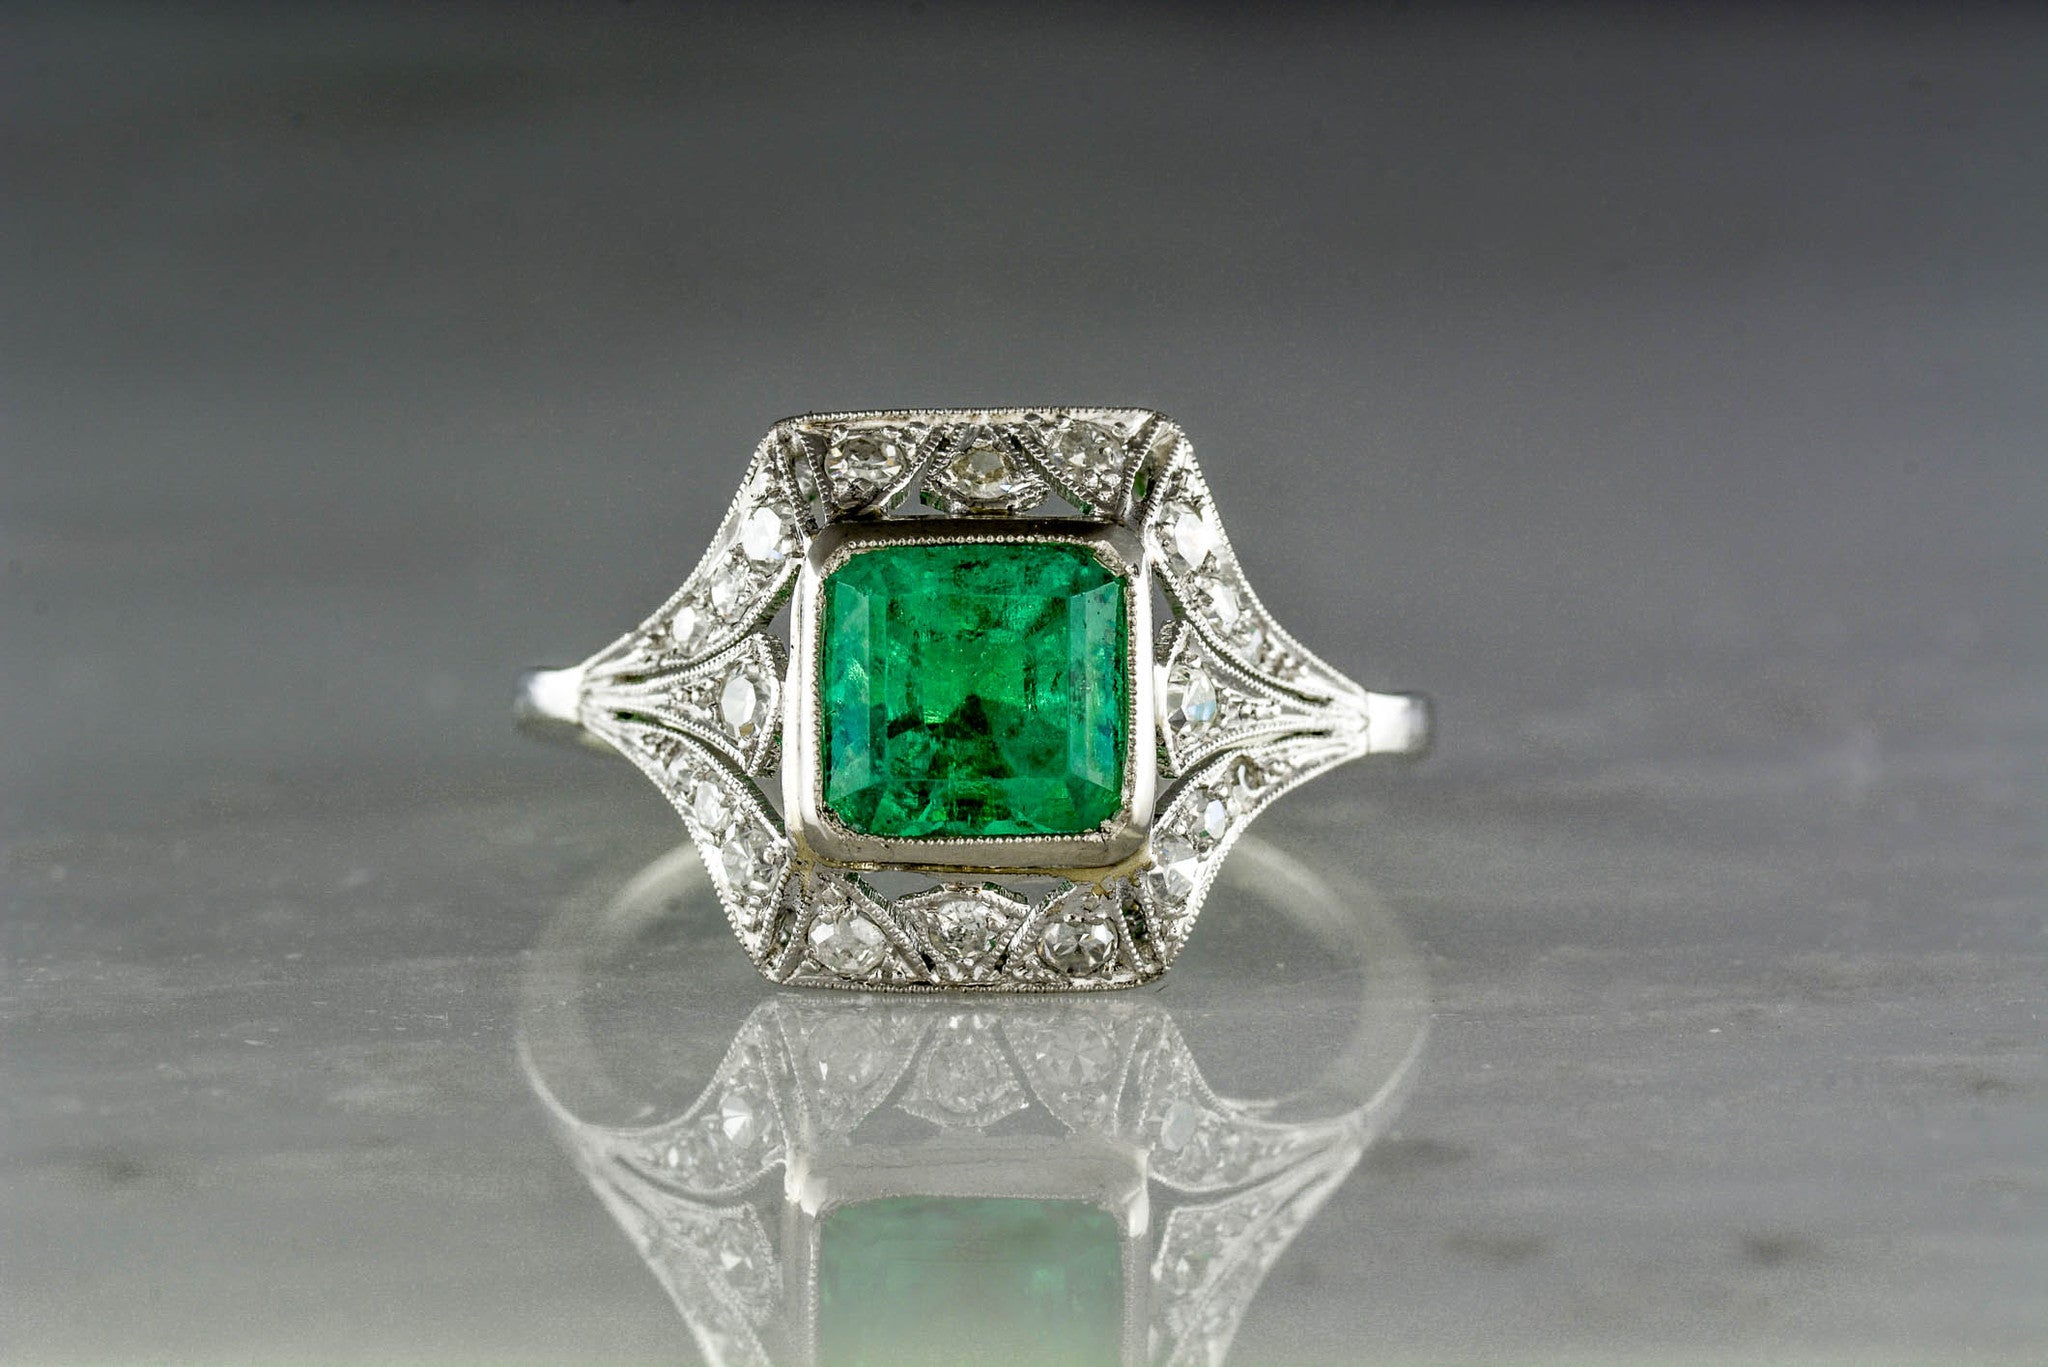 Antique 1.40 Carat Asscher Cut Emerald in an Edwardian / Art Deco Enga ...